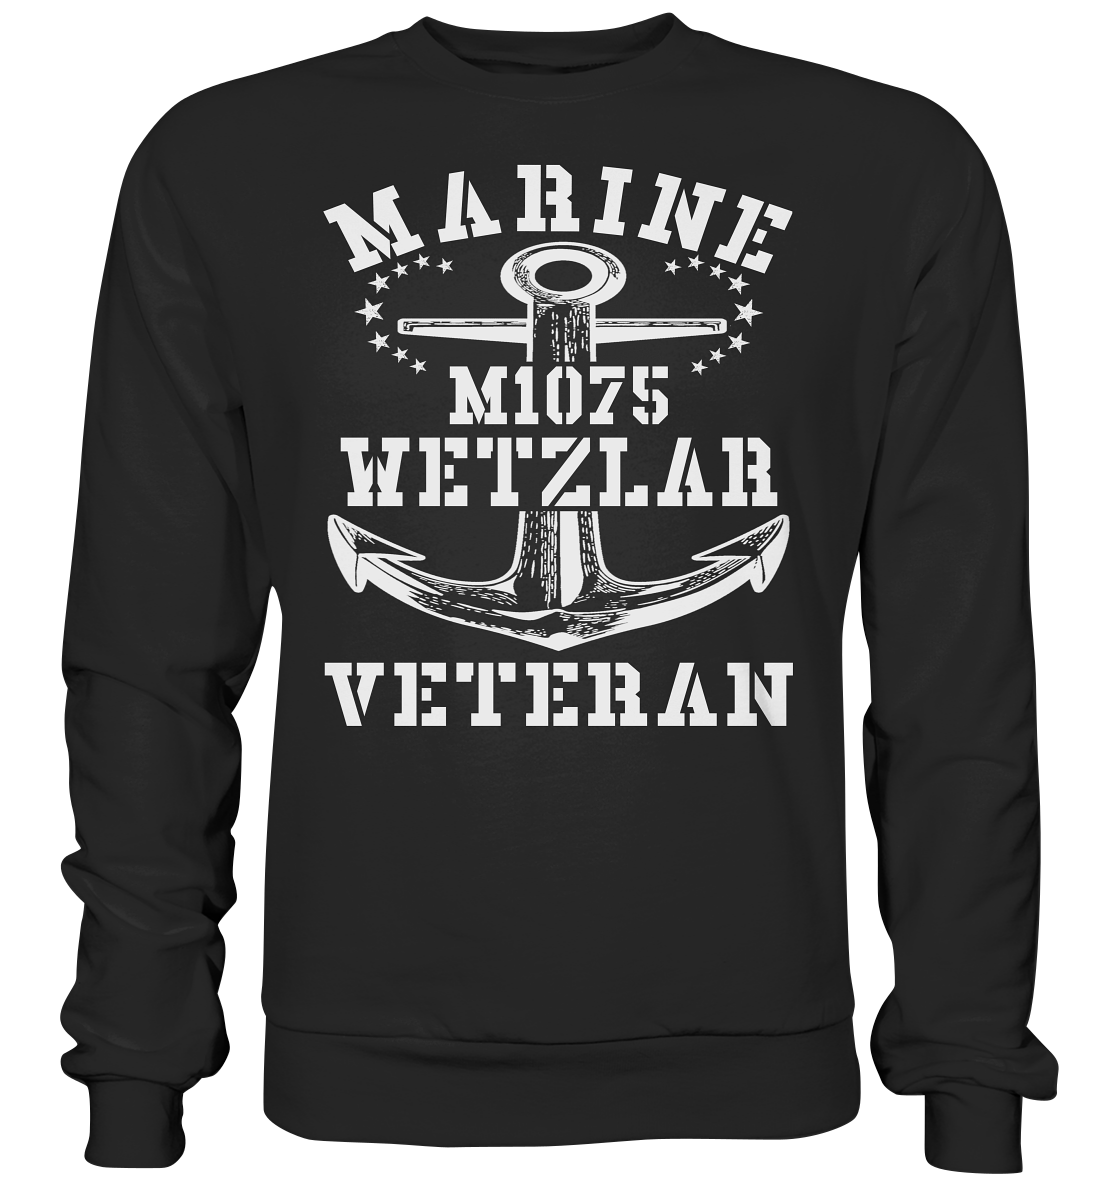 MARINE VETERAN M1075 WETZLAR - Premium Sweatshirt